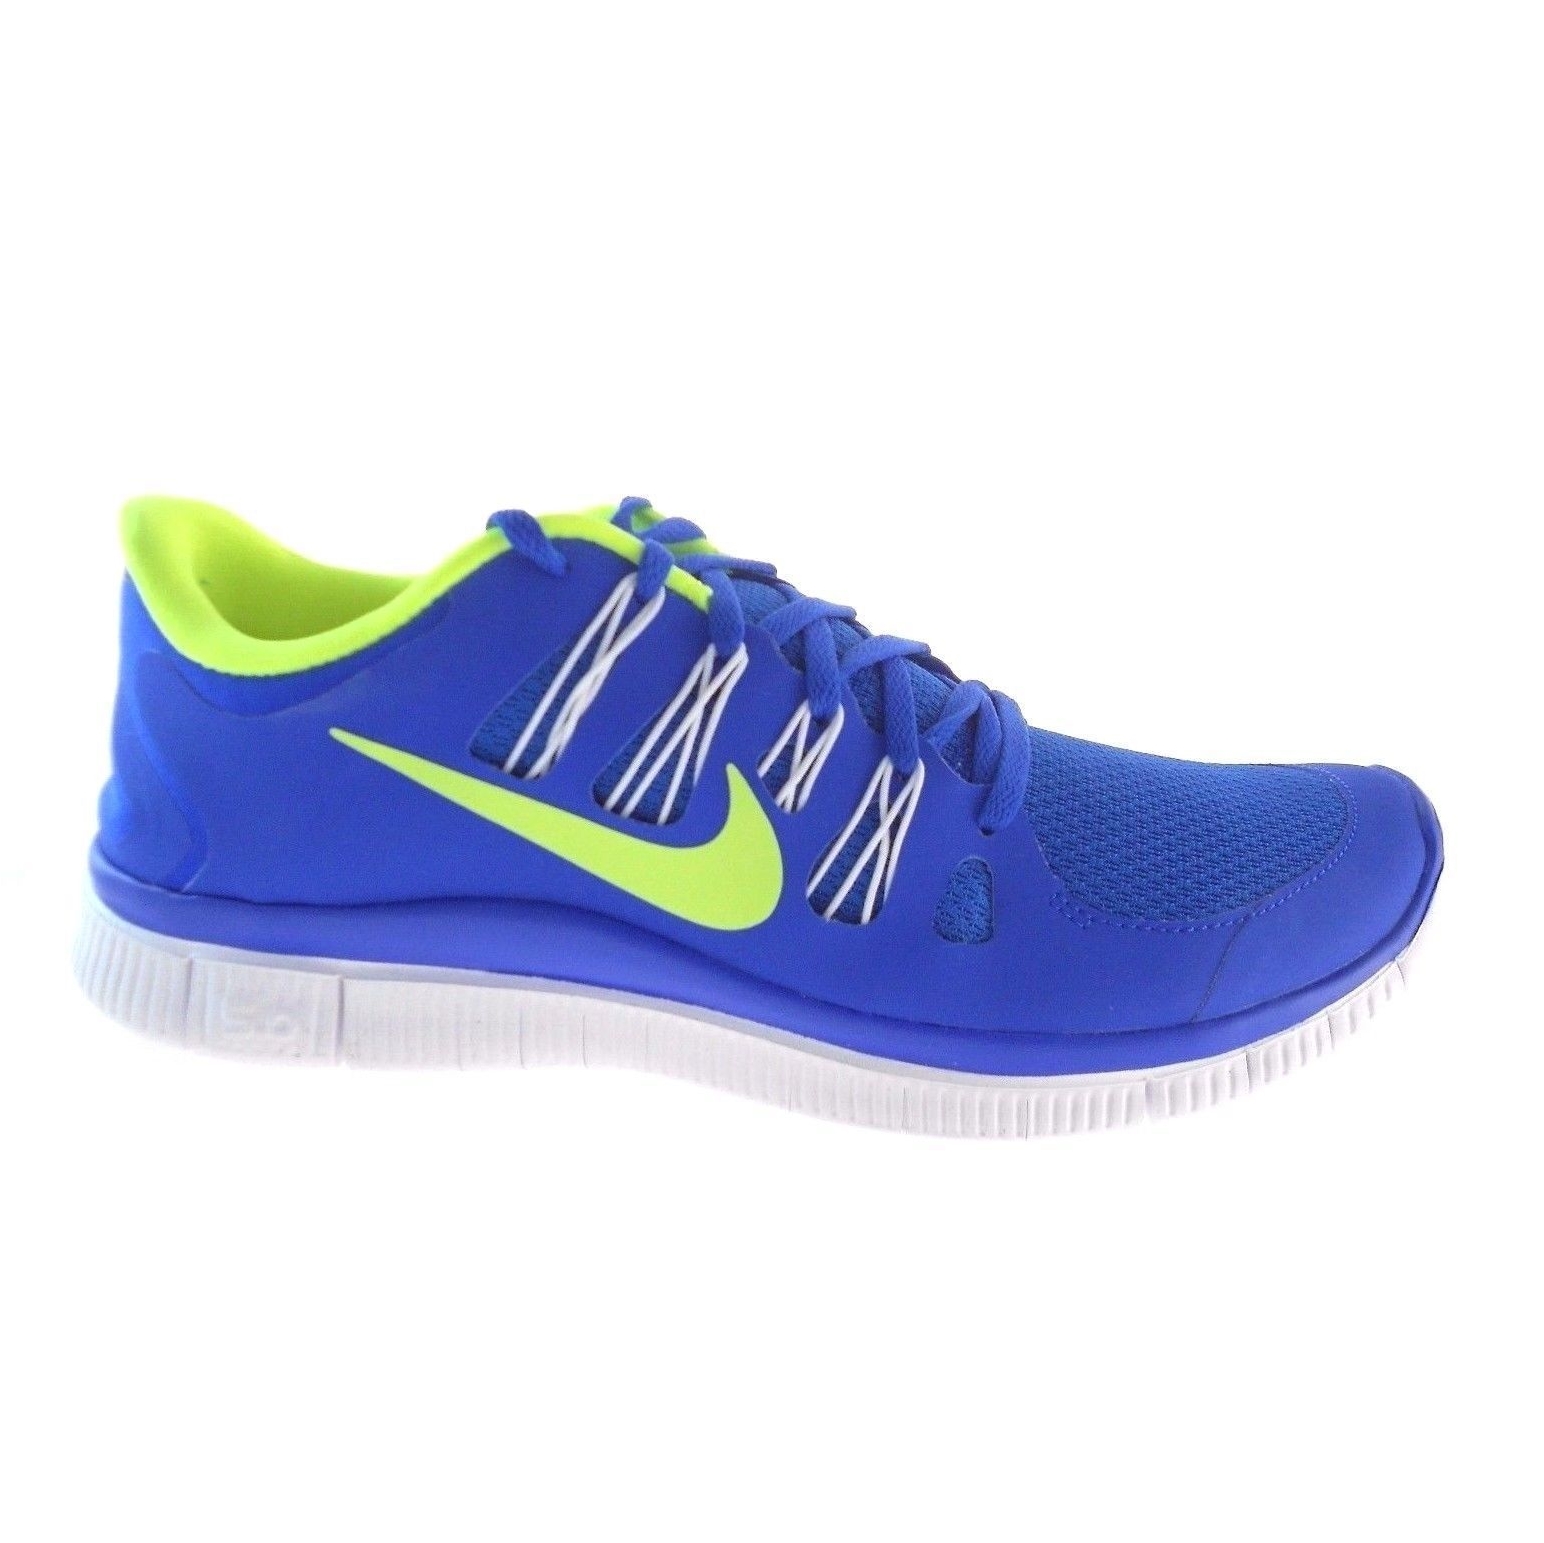 나이키 프리 5.0+ 남성 런닝 운동화 Nike Free 5.0+ Men Running Shoes 579959 402